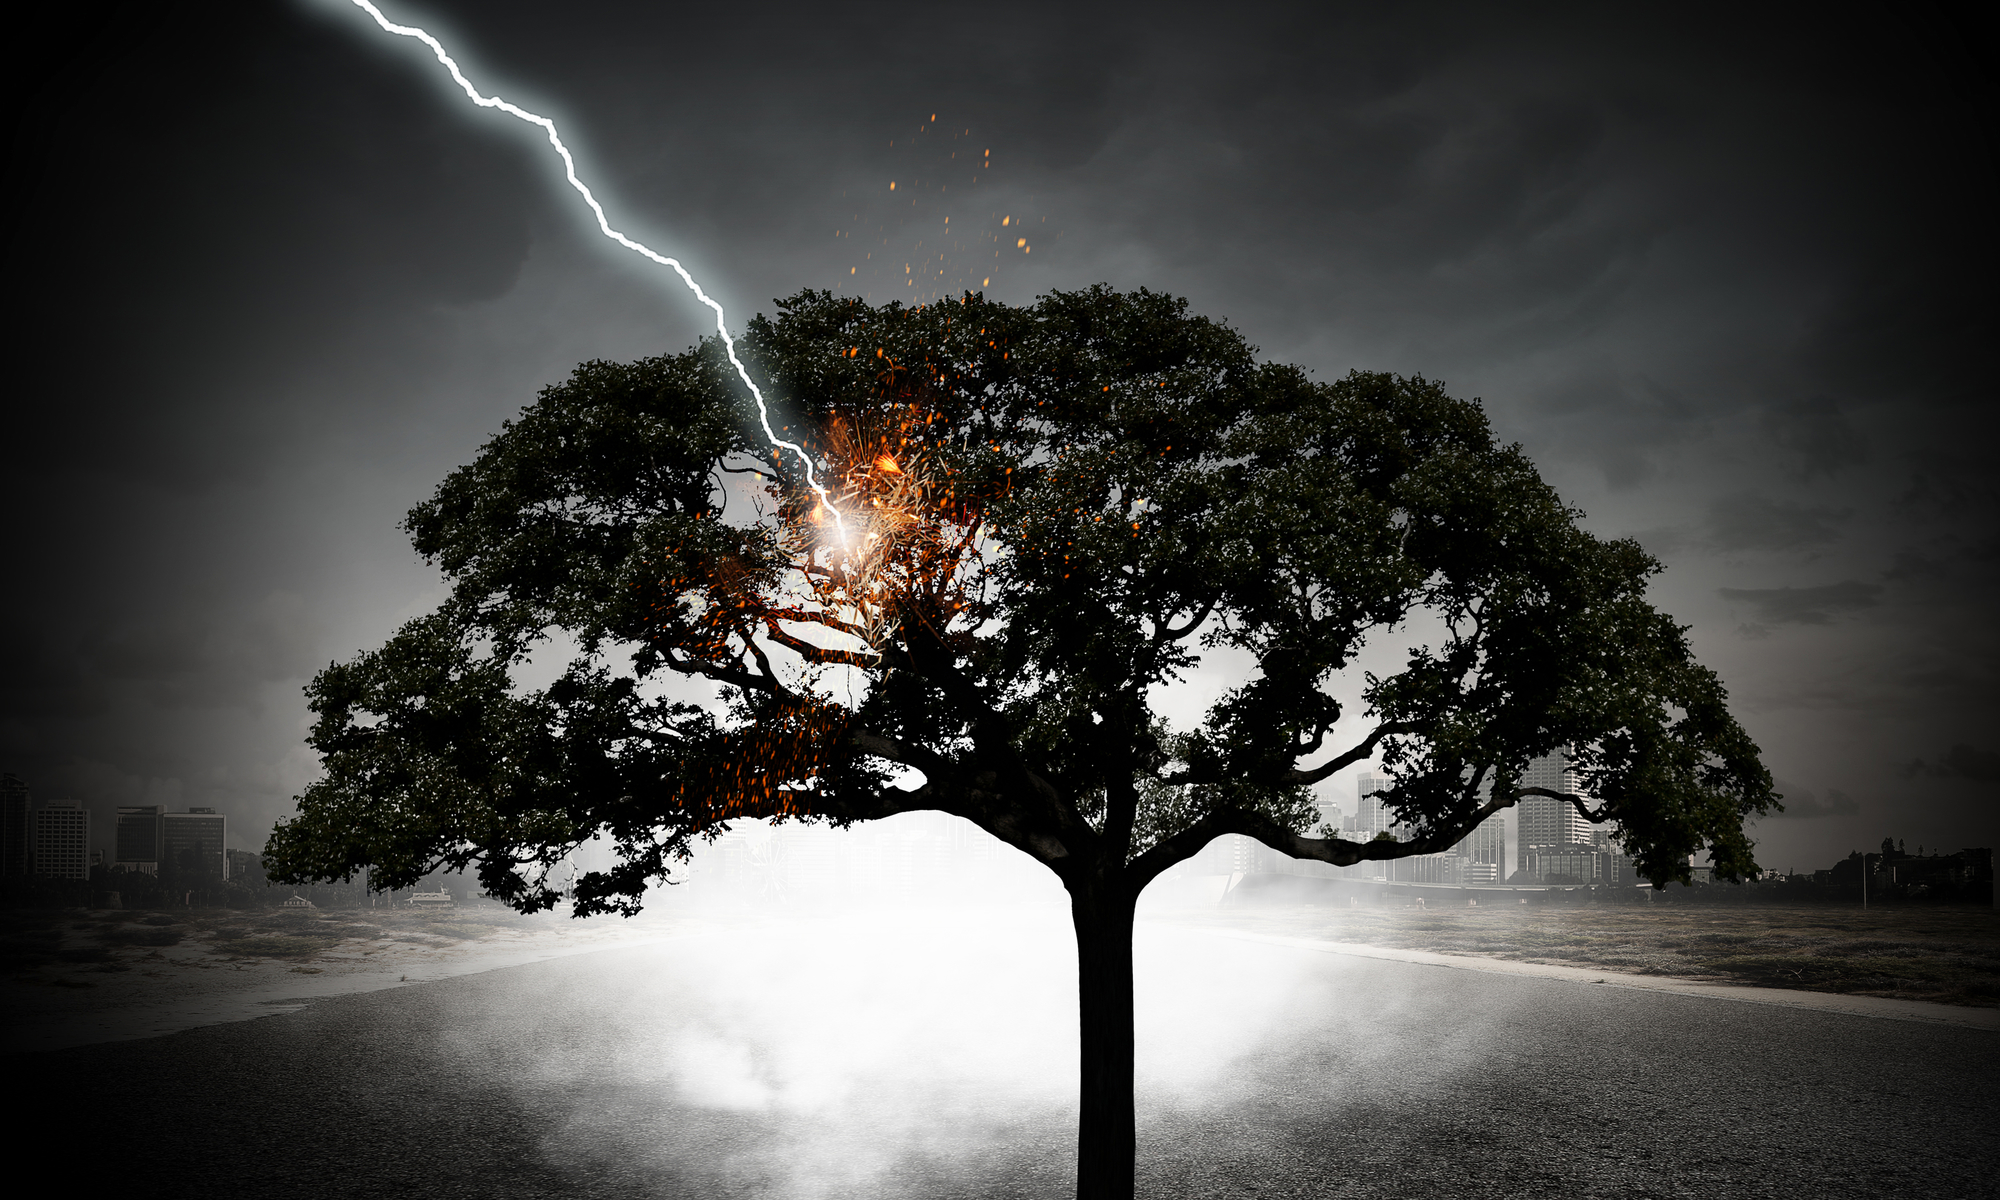 При попадании молнии в дерево спрятавшийся под ним человек попадает под действие шагового напряжения